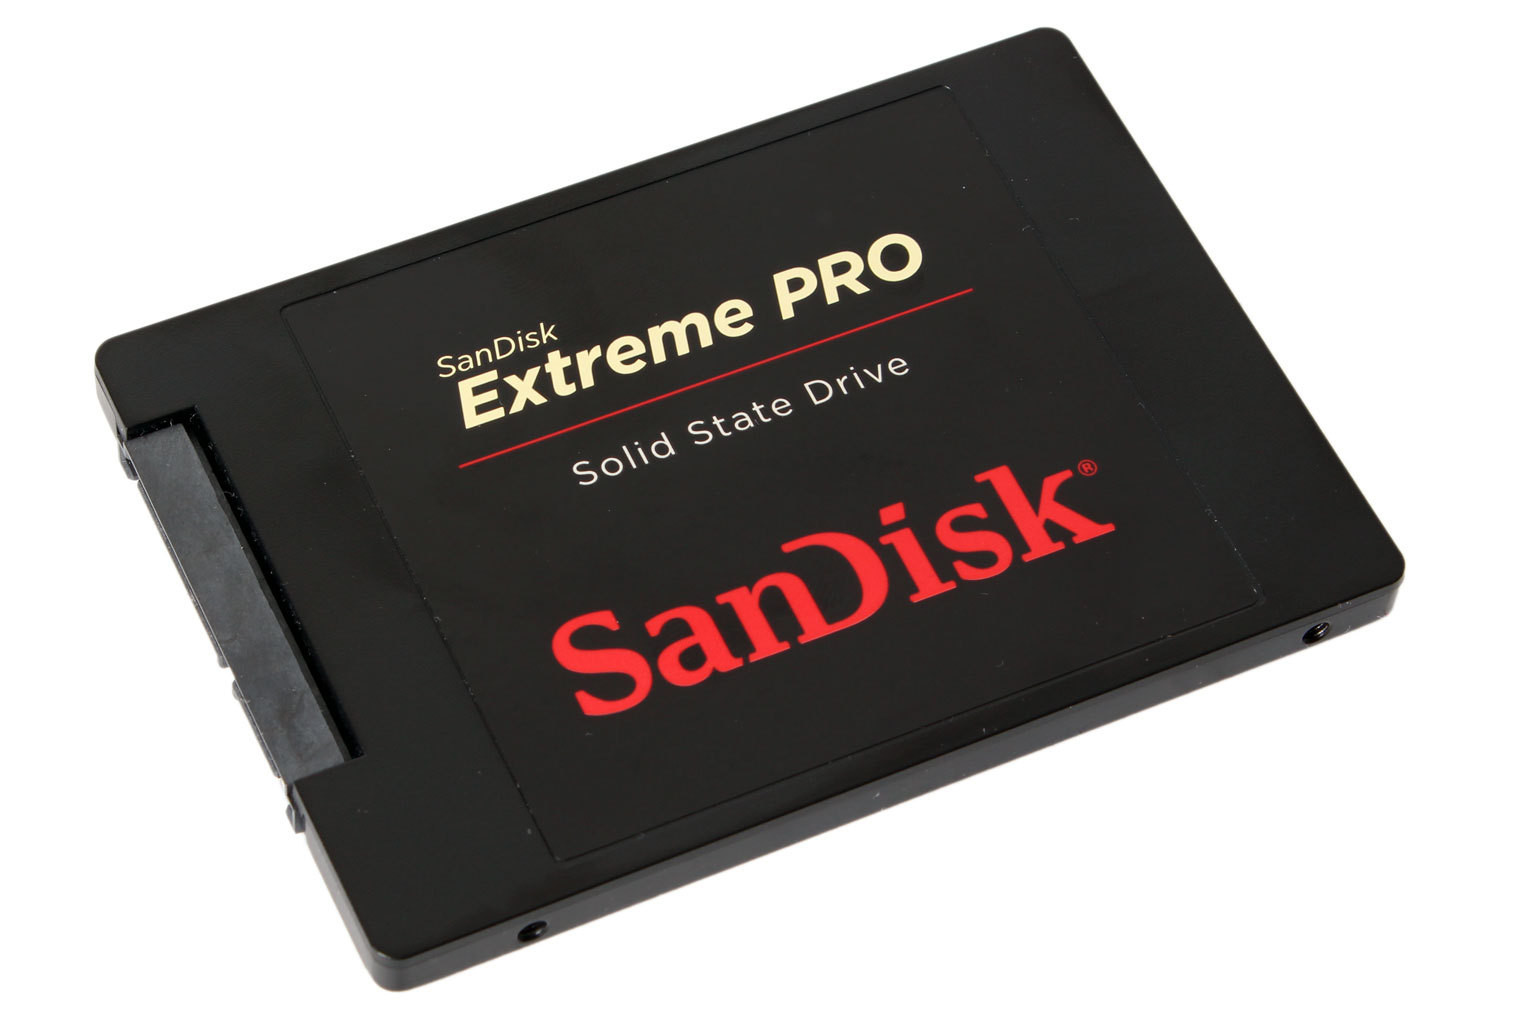 Ssd sandisk pro. SANDISK SSD extreme Pro 256gb. SANDISK extreme Pro SSD extreme Pro. Extreme Pro 128gb SANDISK 200. SANDISK 160 GB.